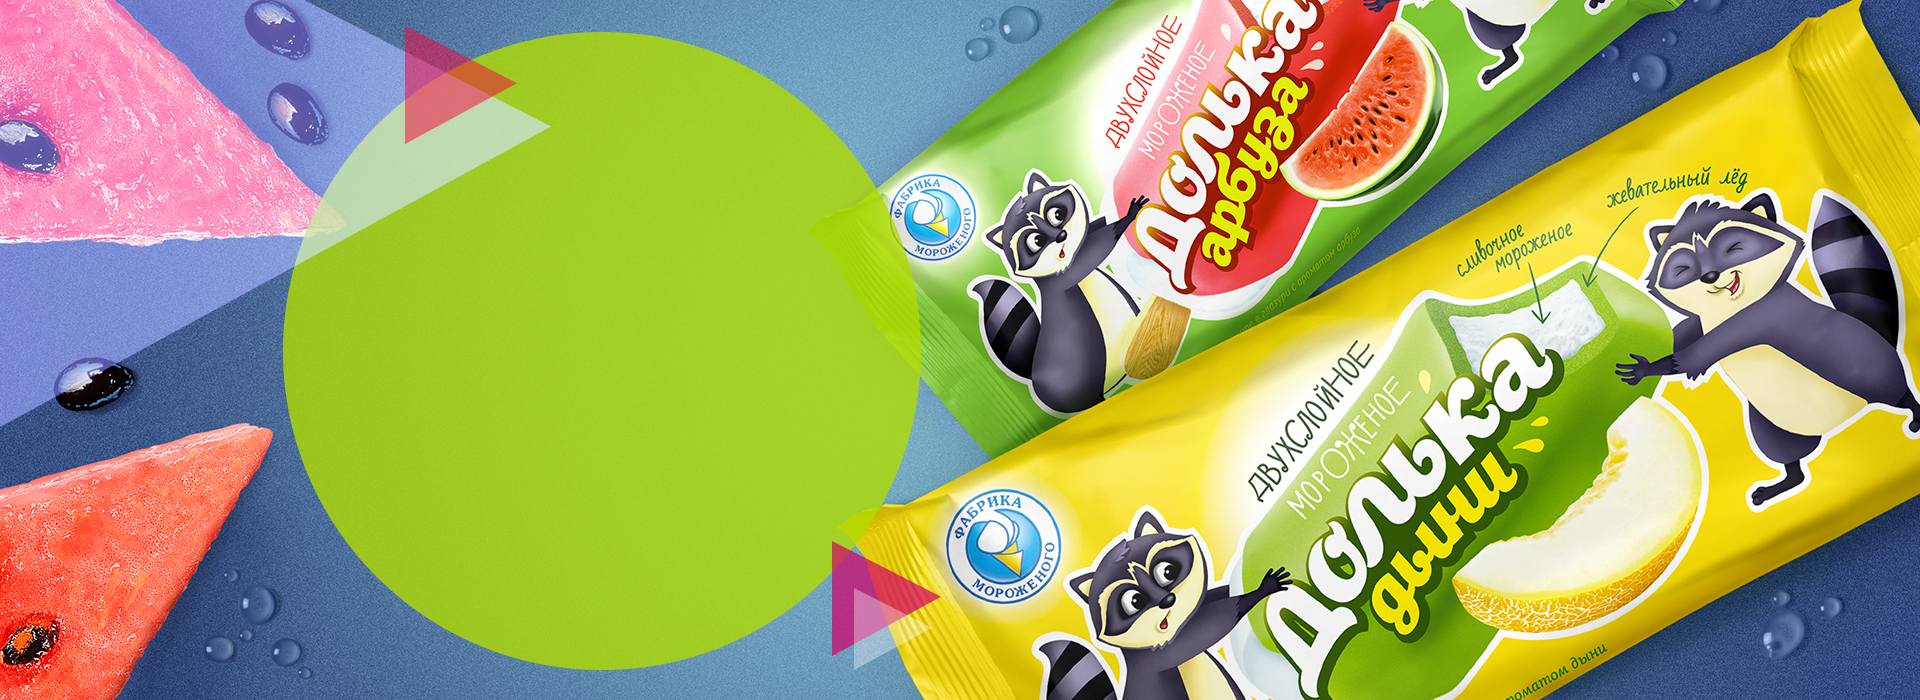 Дизайн упаковки мороженого «Фабрика Мороженого», долька фруктов в новой упаковке — A.STUDIO